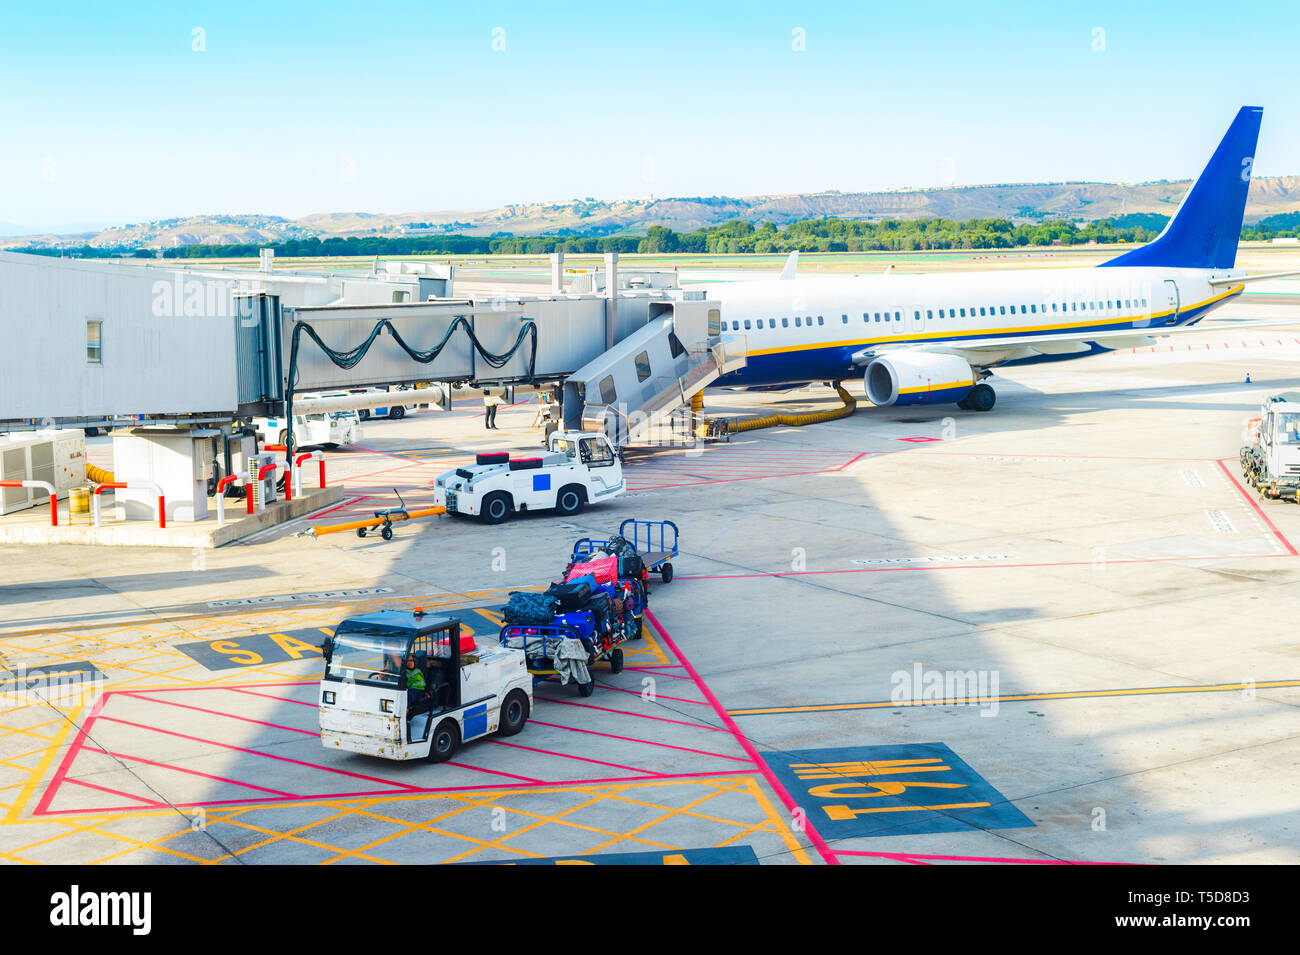 La escena del aeropuerto, pasillo de avión, cargador del servicio de automóviles que transportan equipajes por aeródromo, Madrid, España Foto de stock